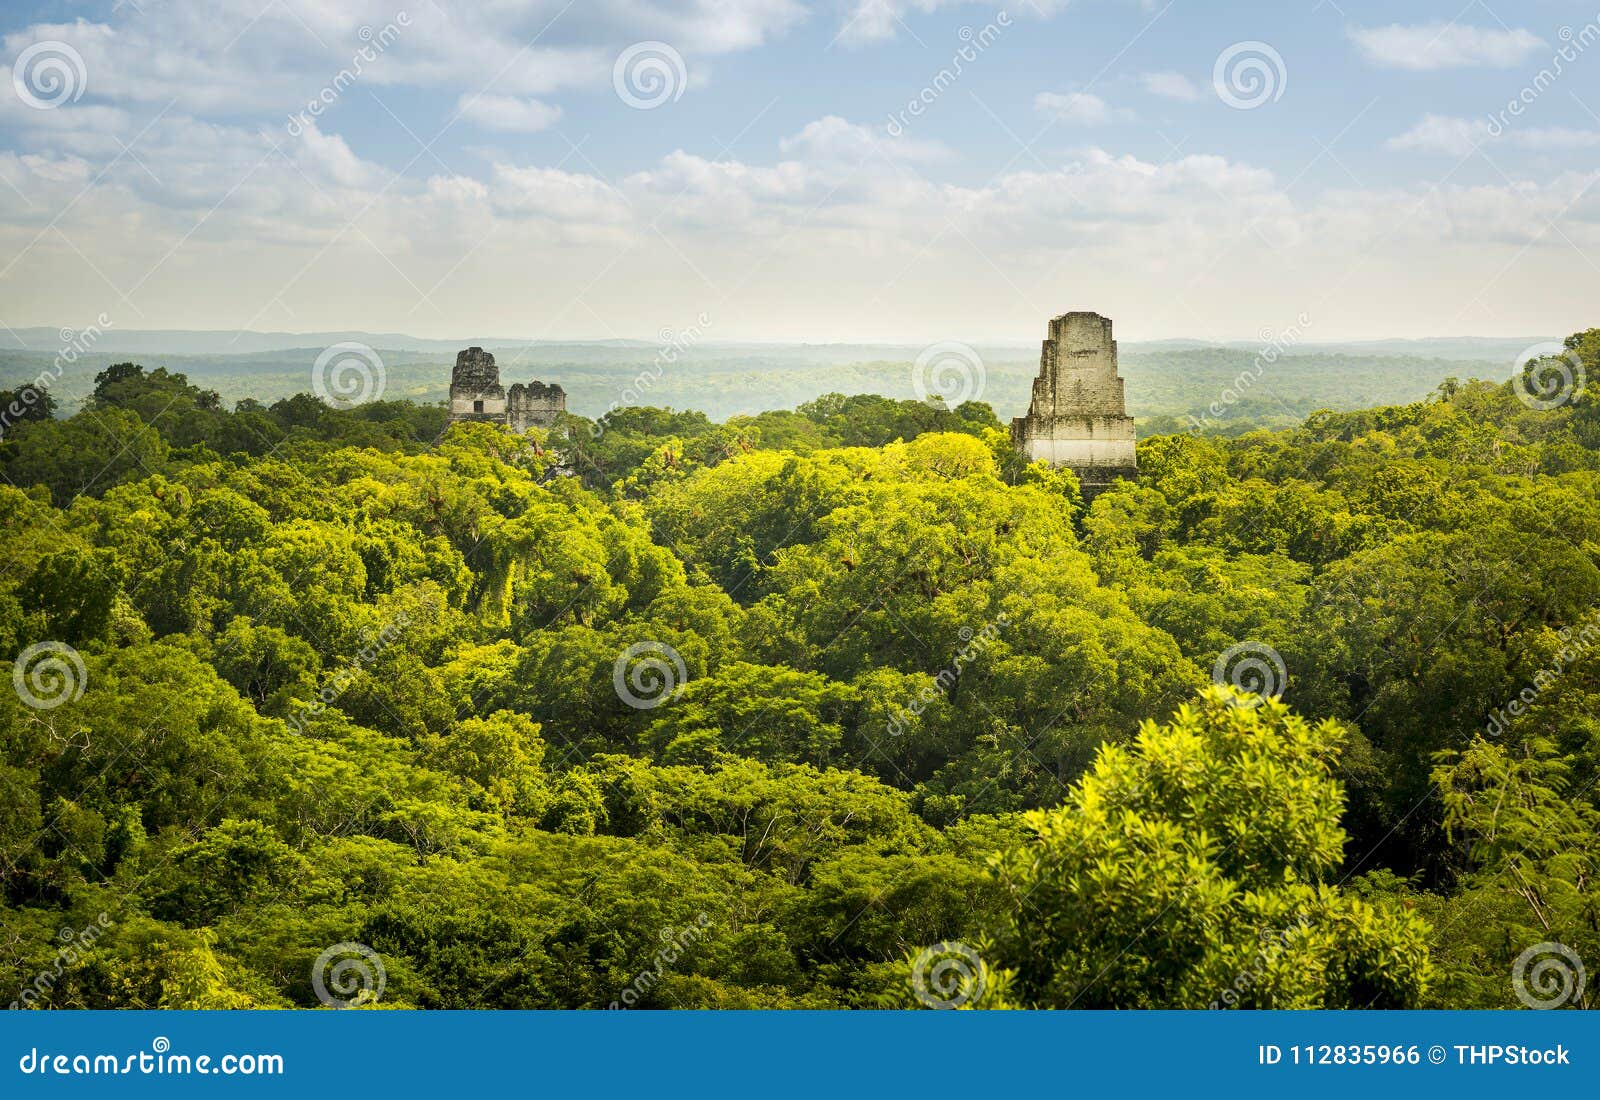 tikal guatemala mayan ruins